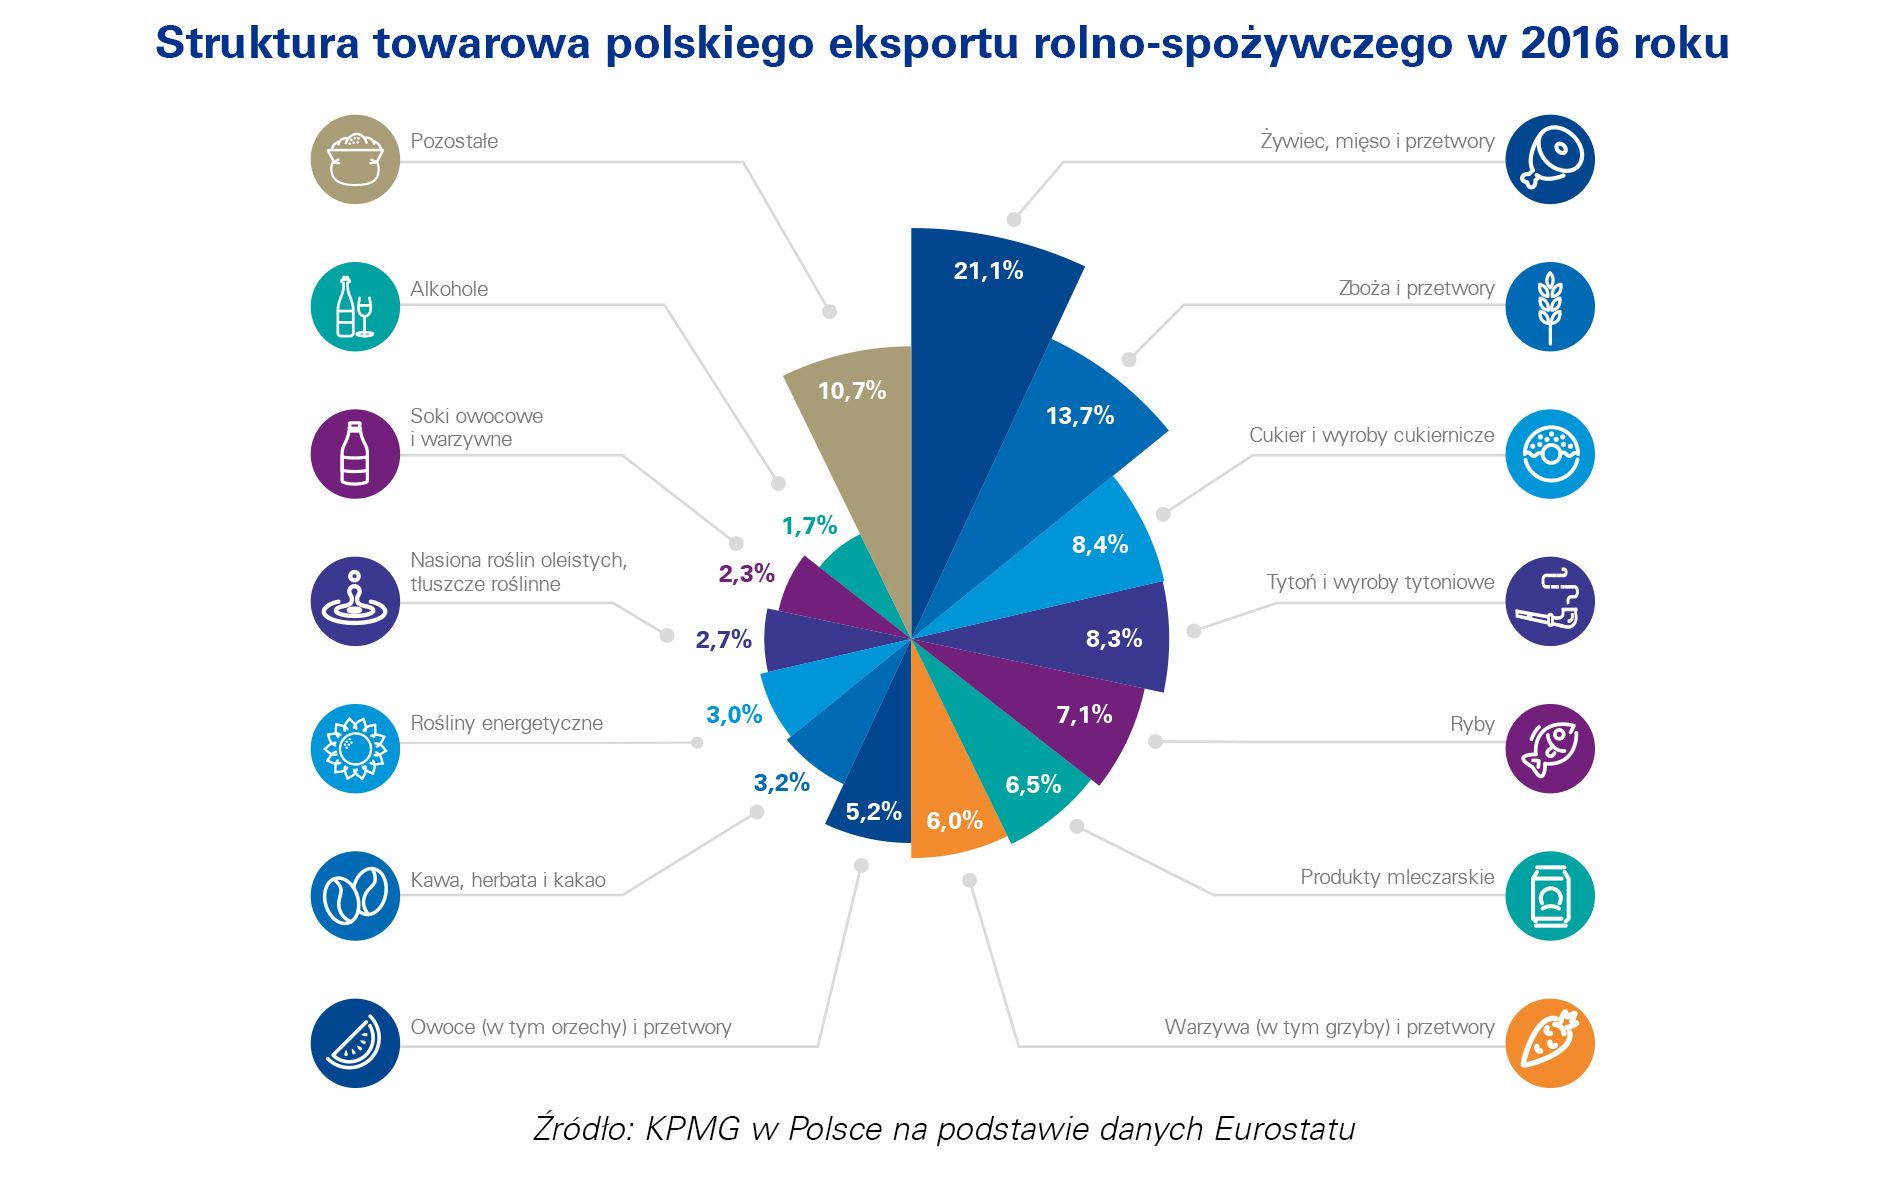 Struktura towarowa polskiego eksportu rolno-spożywczego w 2016 roku